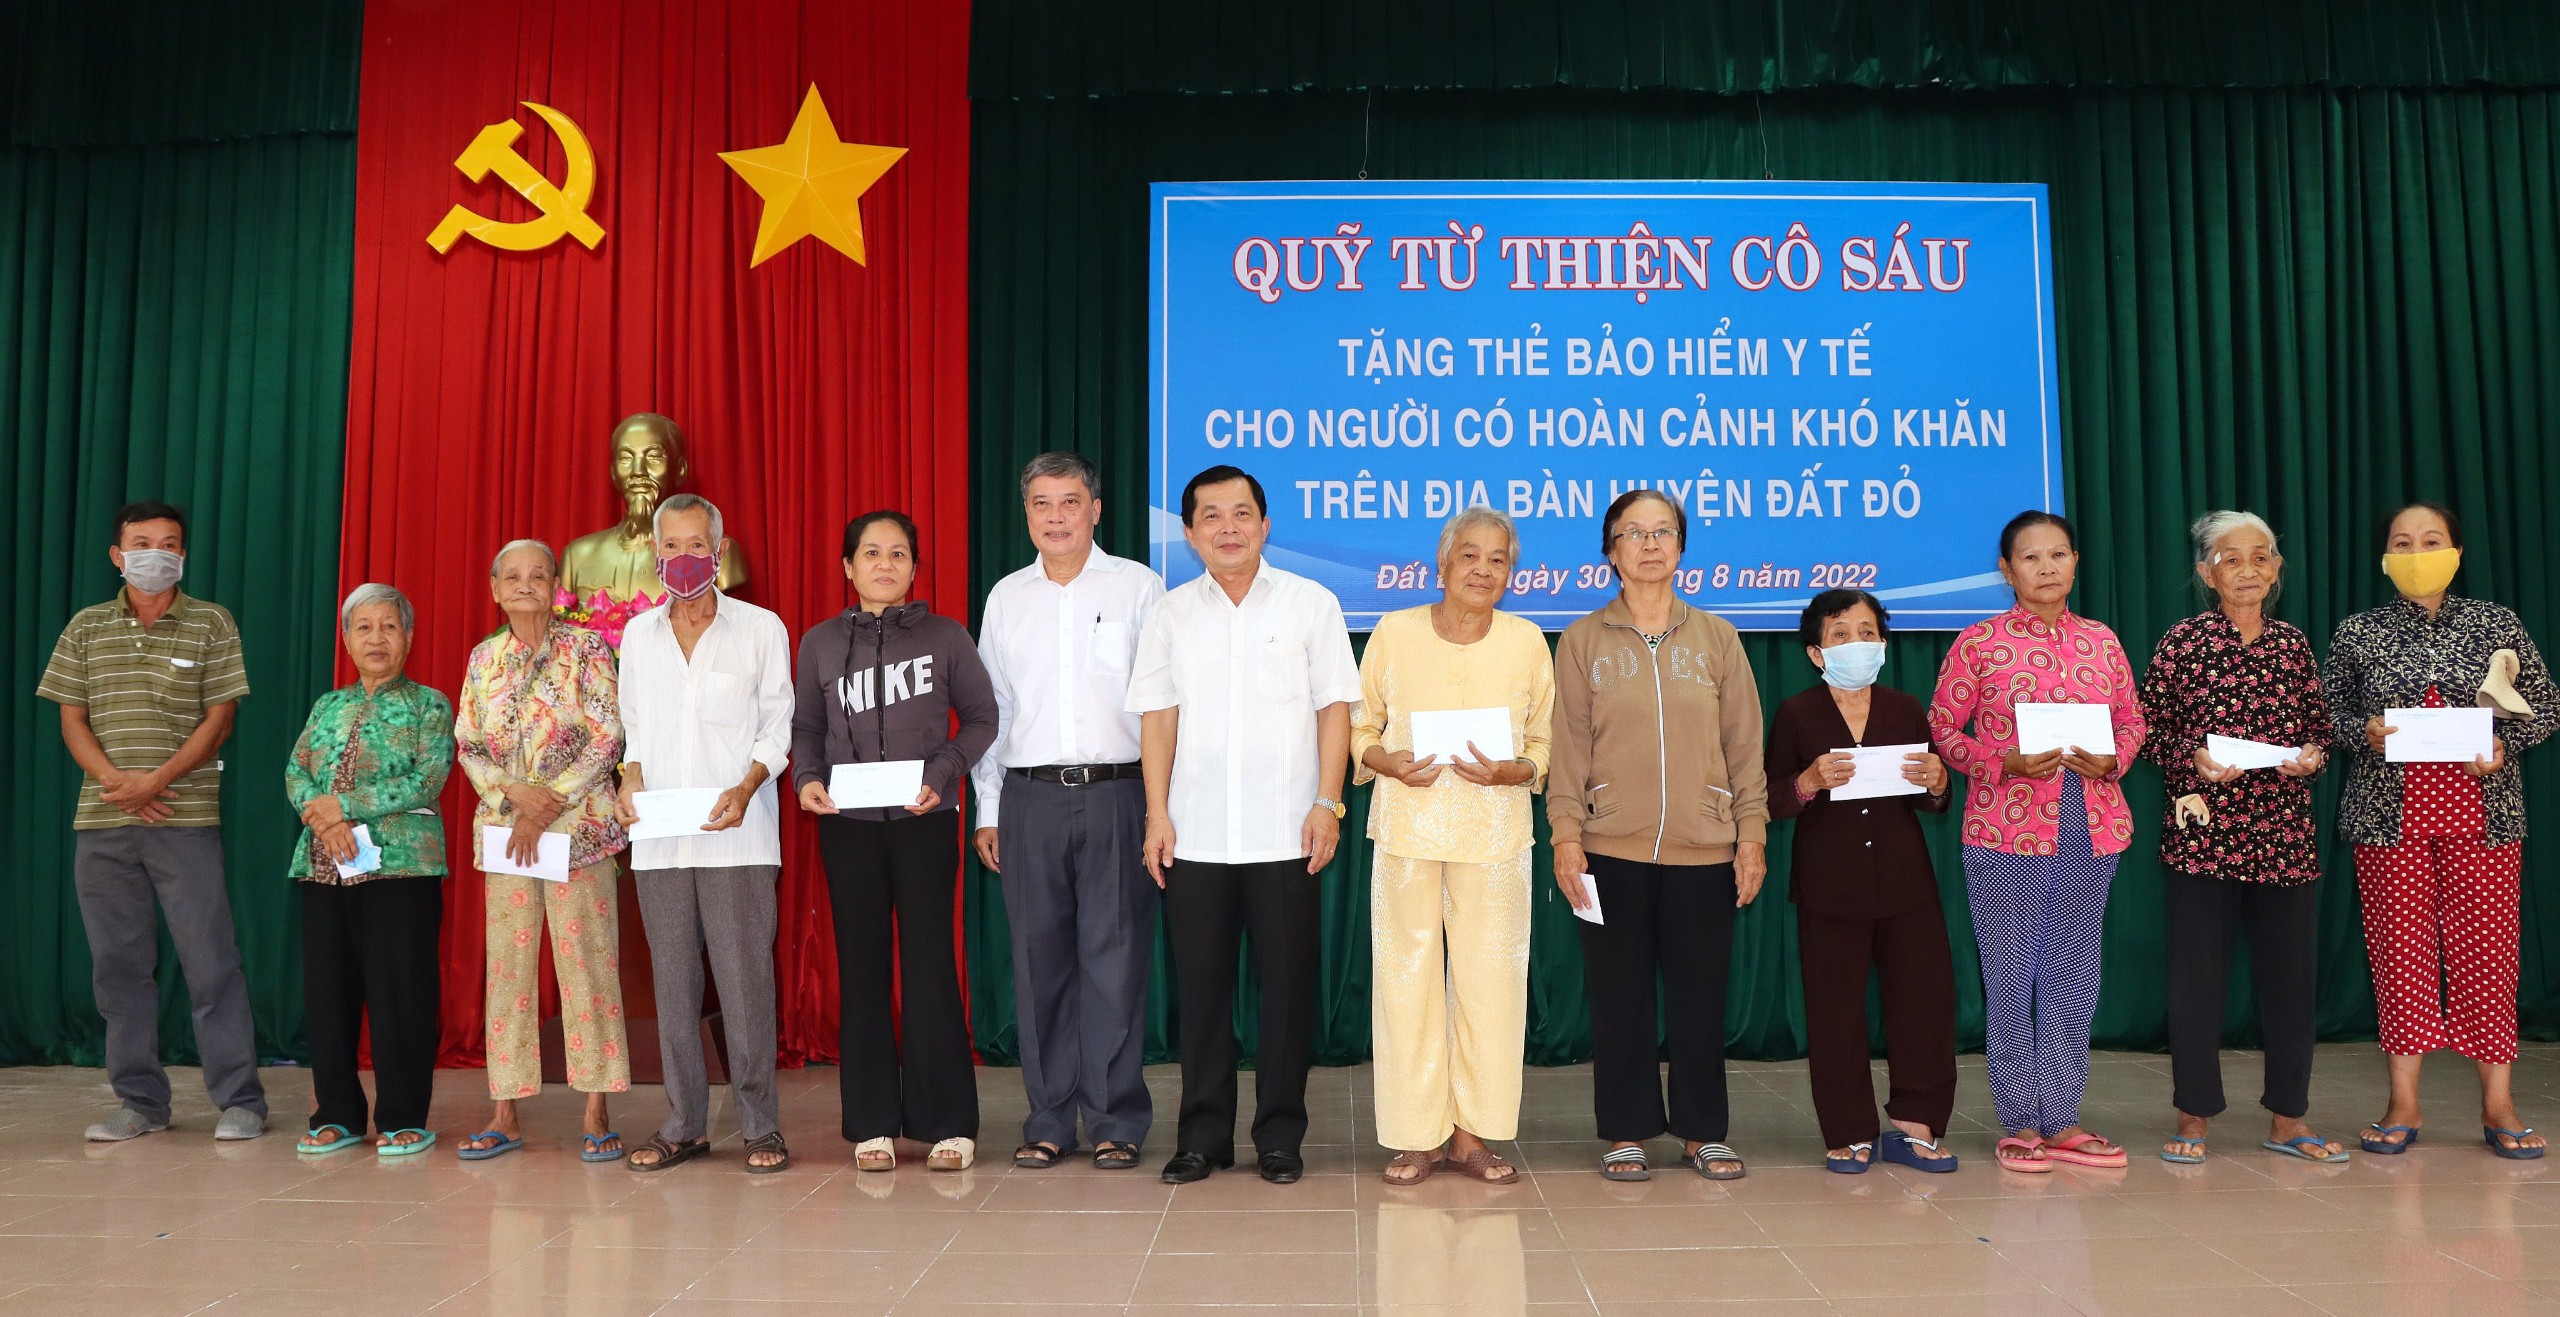 Ông Hồ Văn Lợi, Chủ tịch Hội đồng quản lý Quỹ từ thiện Cô Sáu cùng mạnh thường quân trao quà cho hộ nghèo.